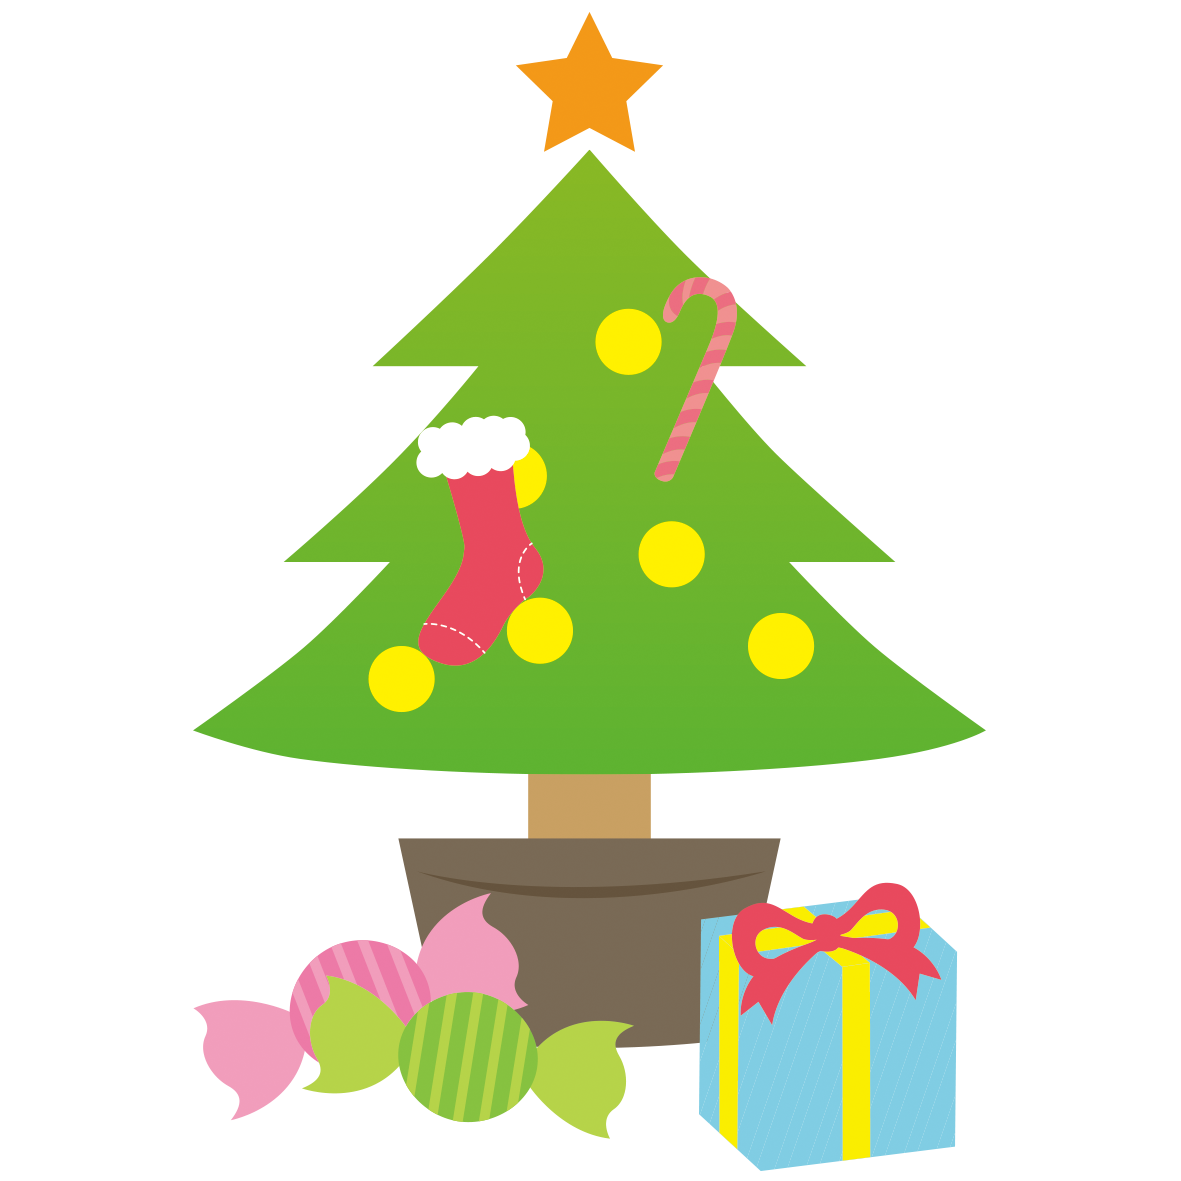 クリスマスツリーとプレゼントのシンプルなイラストです。ツリーには靴下やキャンディーが飾られています。